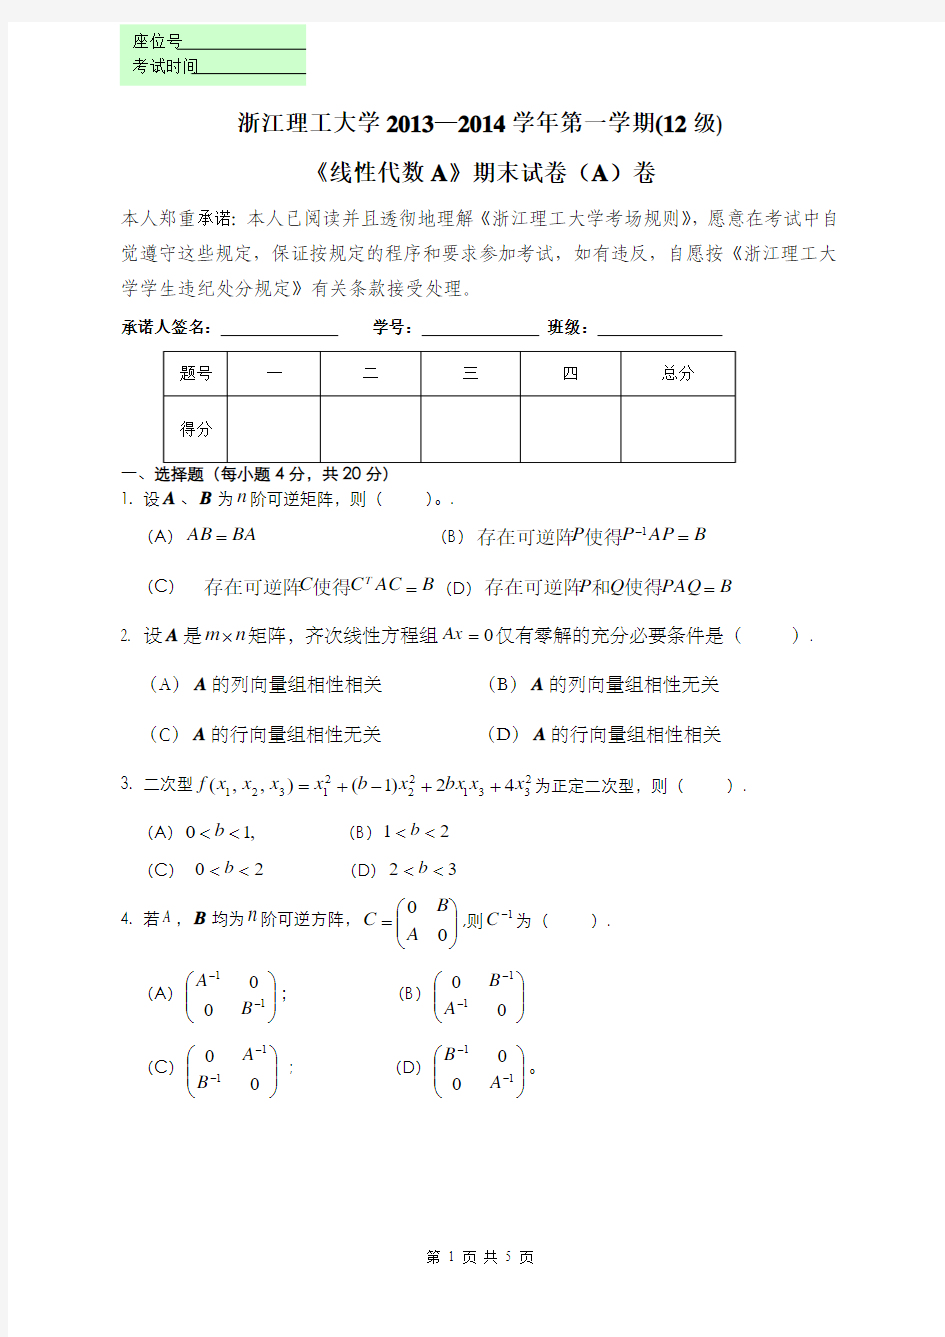 浙江理工大学2013-2014(1)线性代数试题